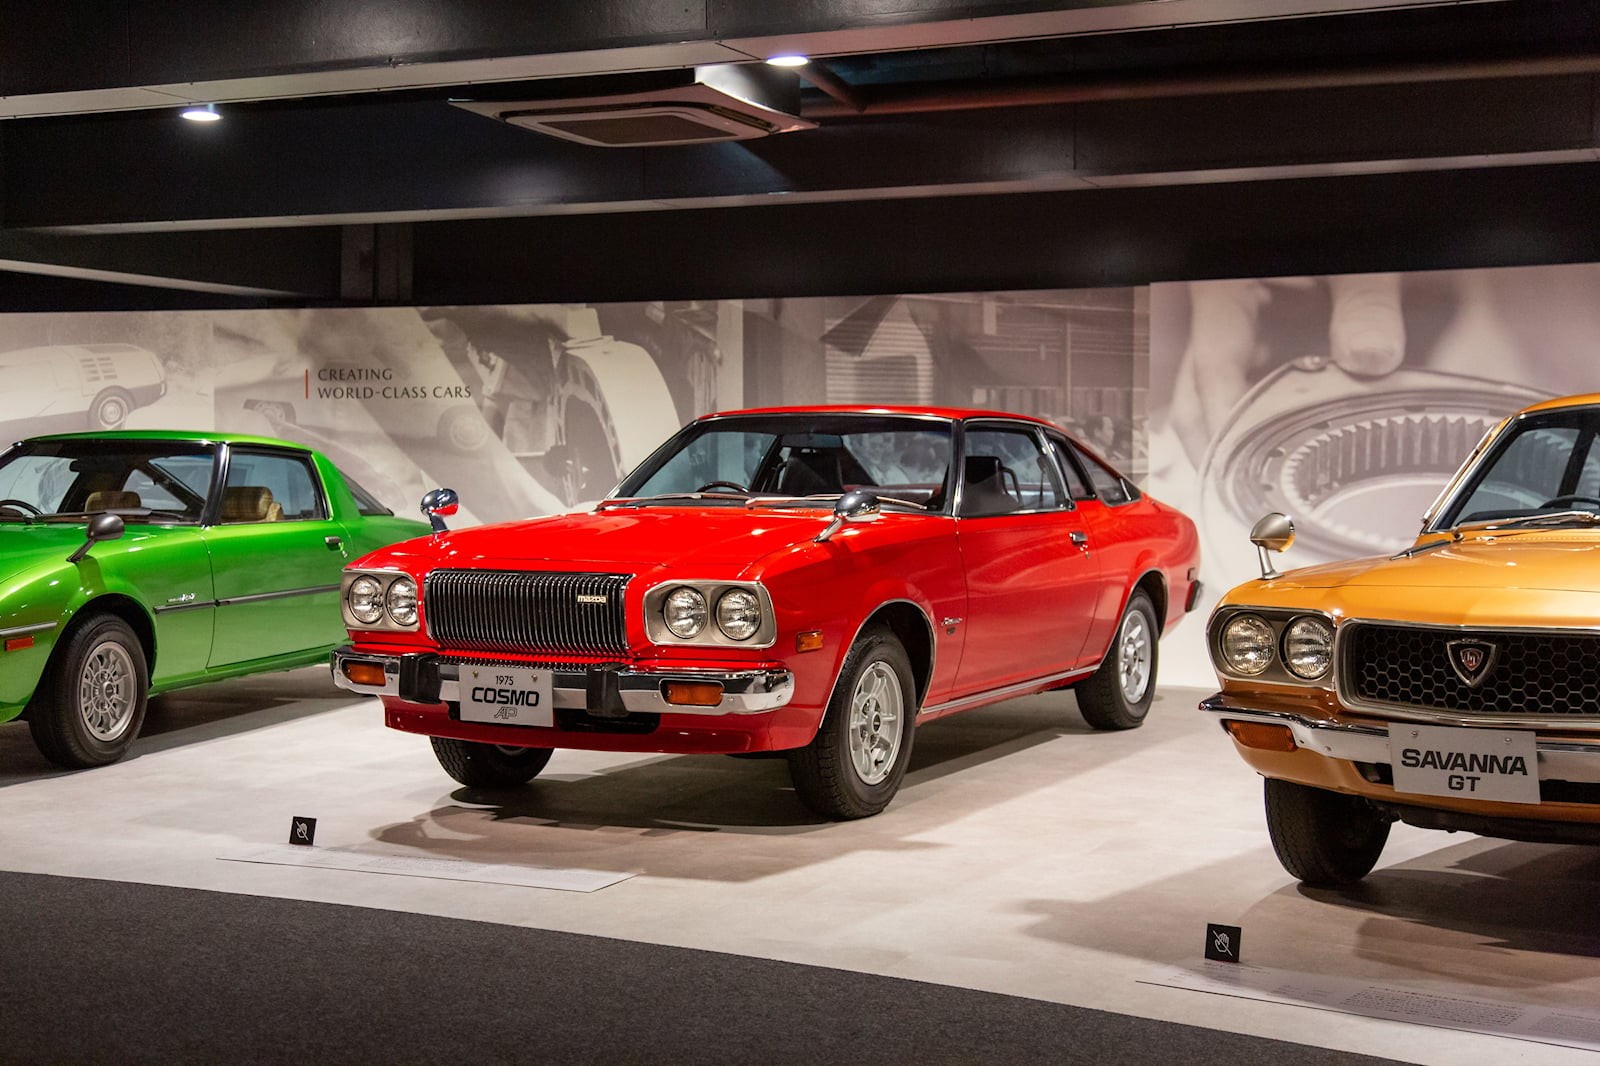 Khám phá bảo tàng của Mazda tại Nhật Bản ảnh 3